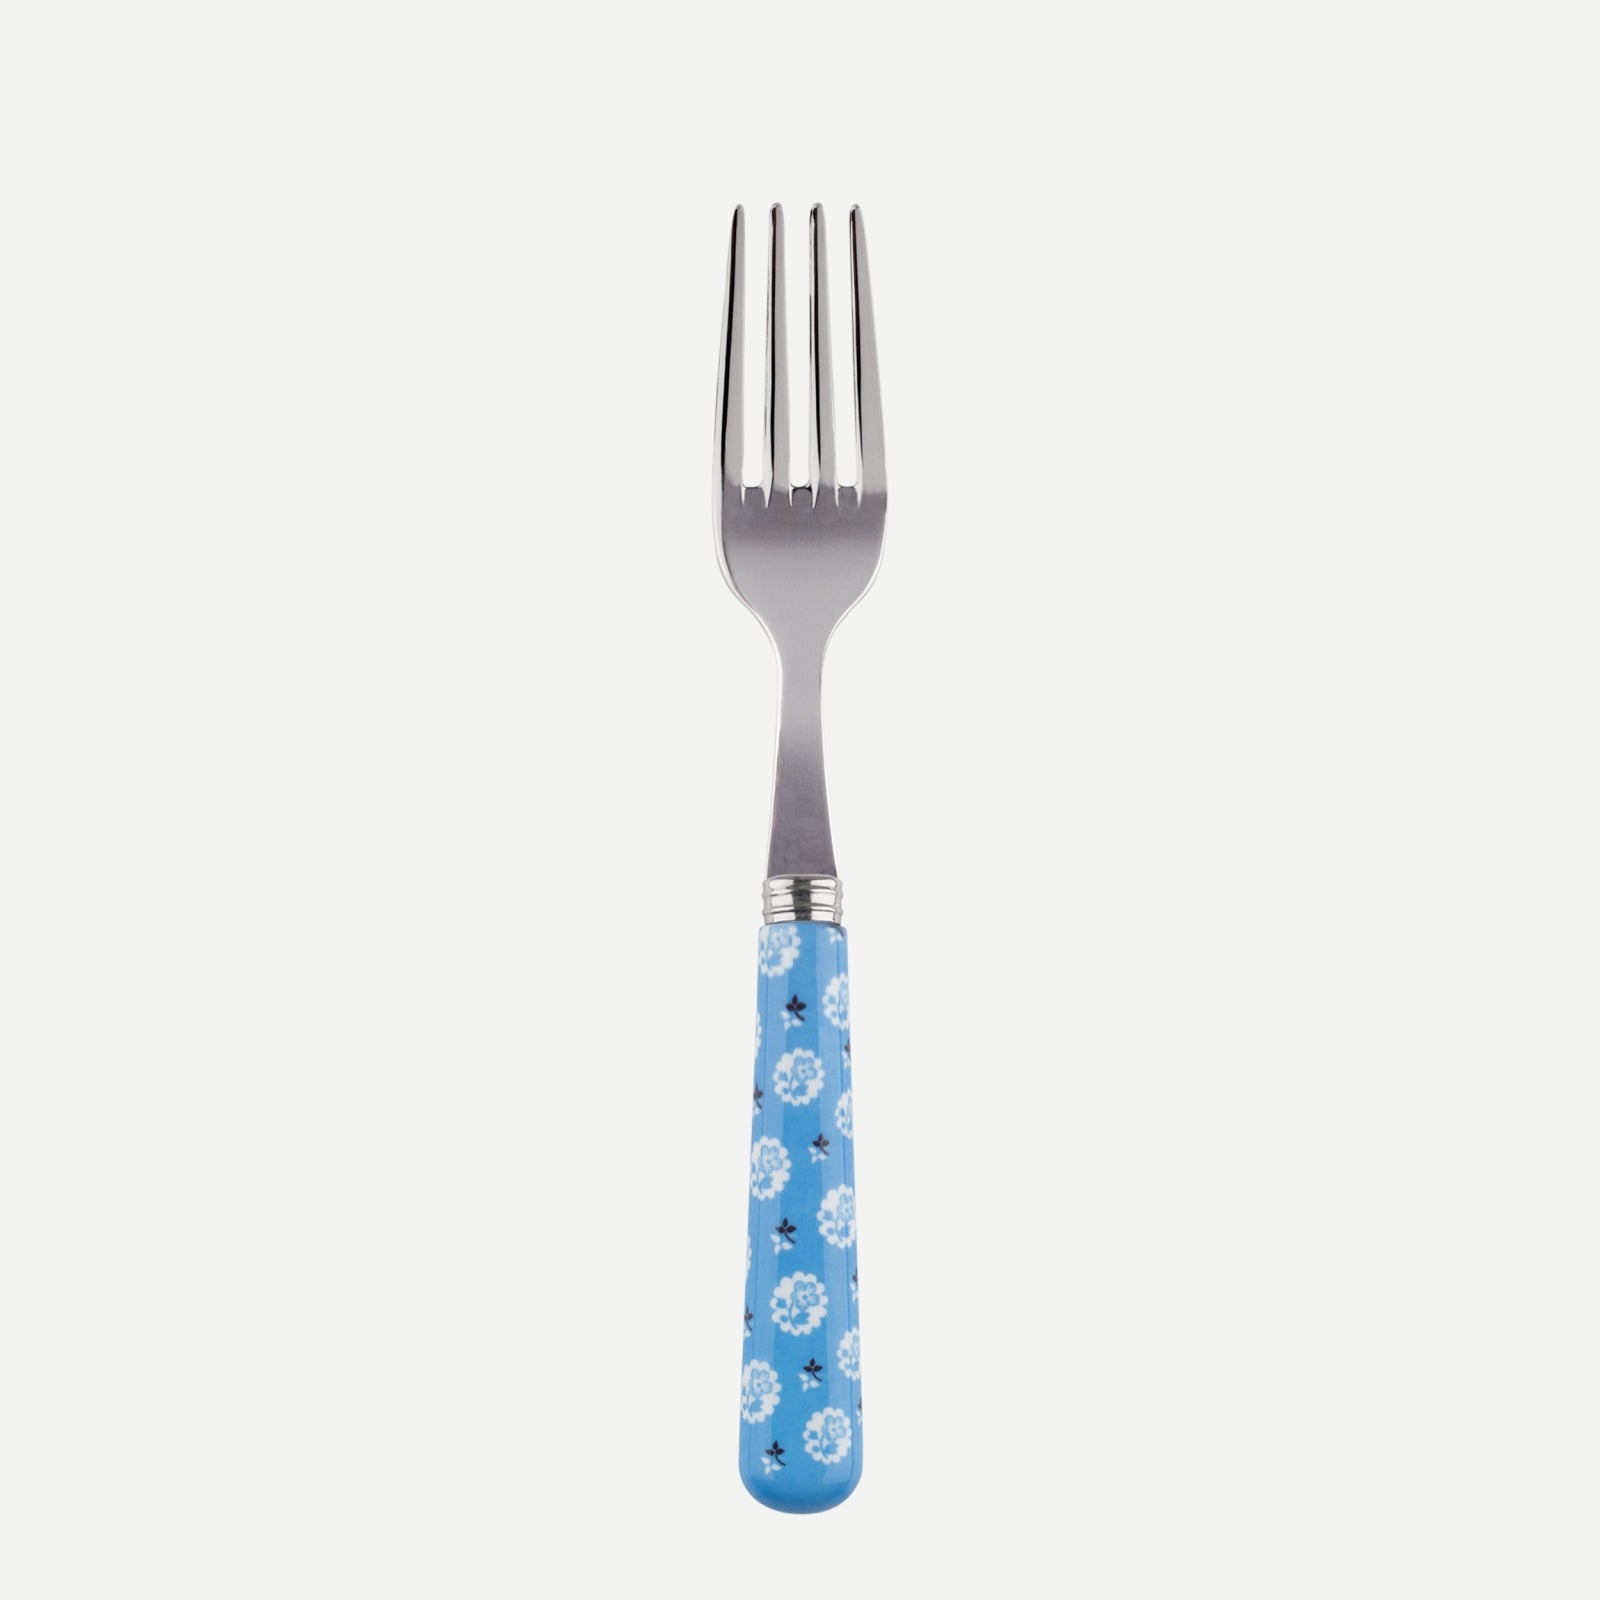 small fork - Provencal - Light blue